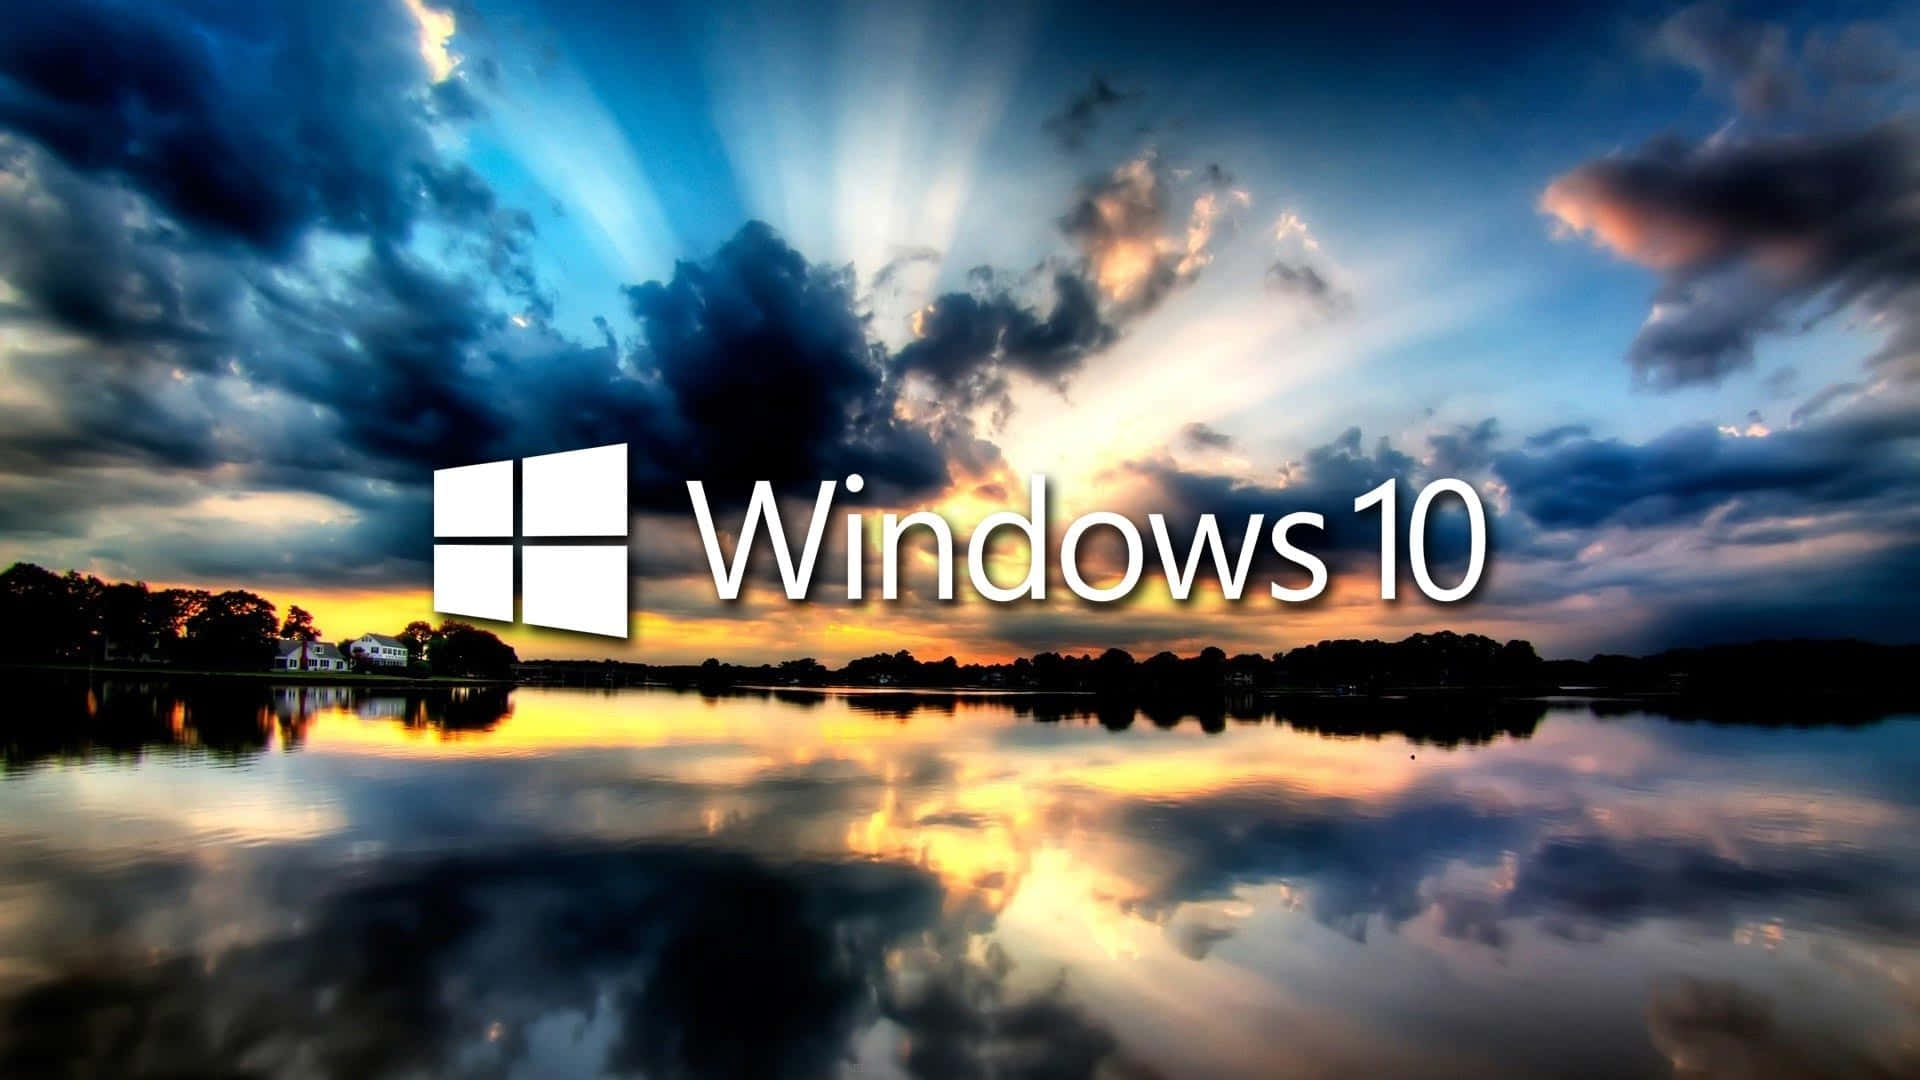 Bleibensie Organisiert Und Steigern Sie Ihre Produktivität Mit Windows 10.